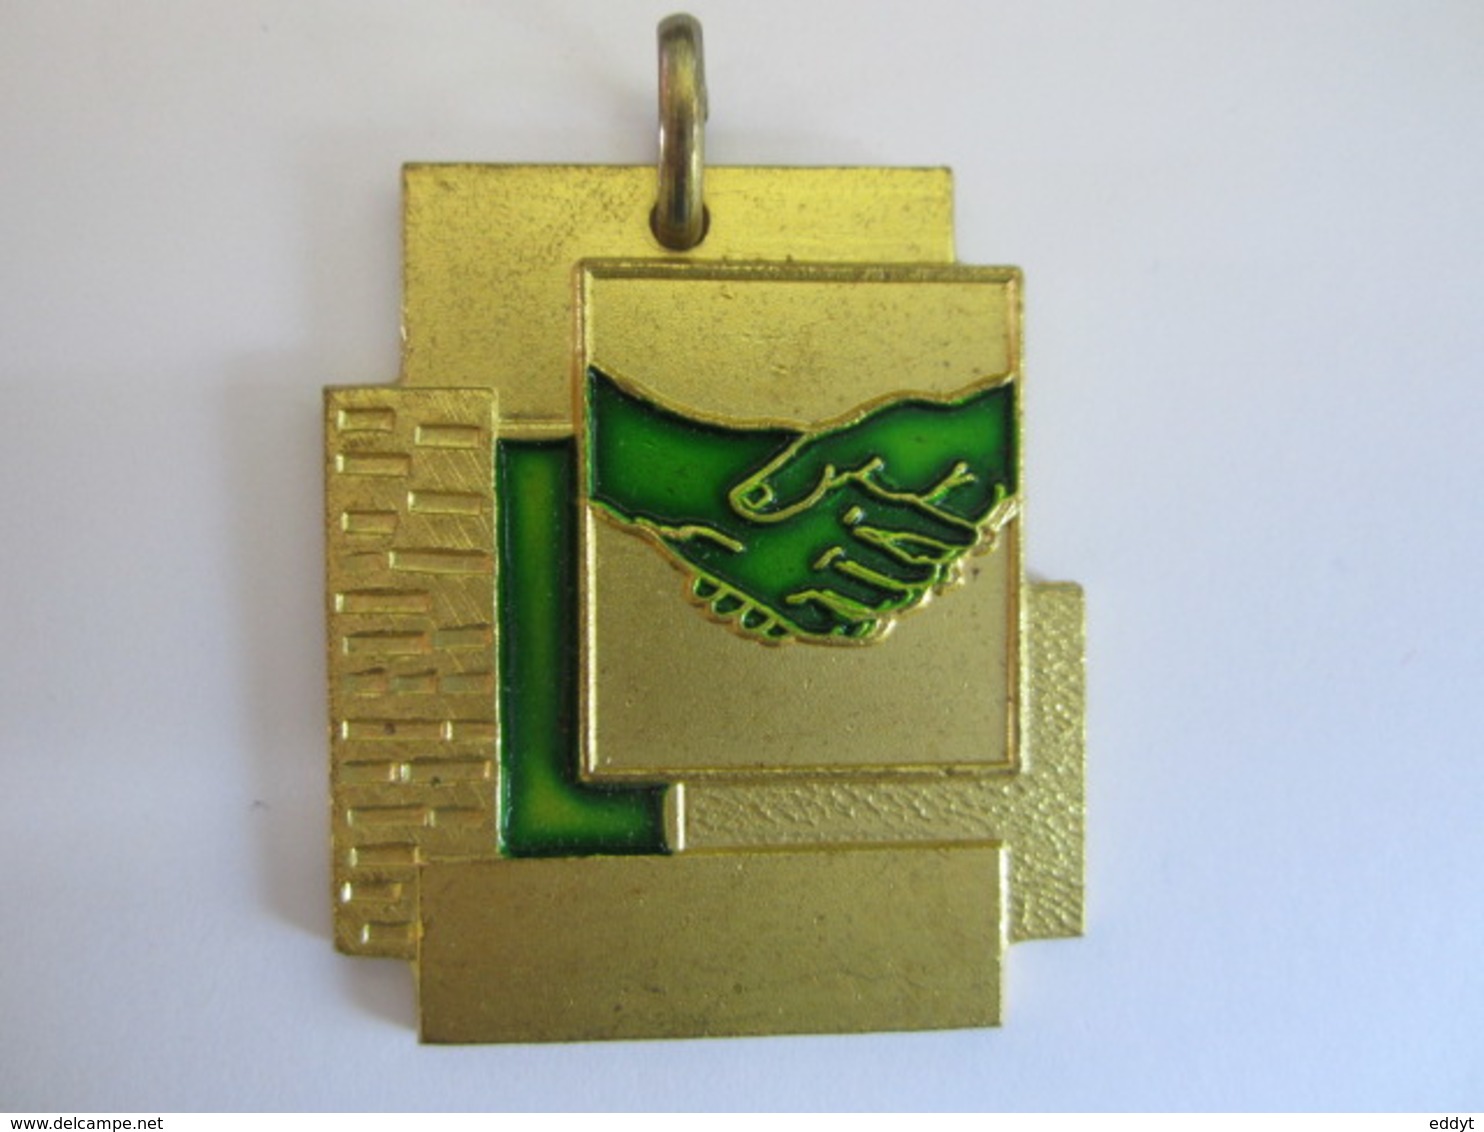 Médailles récompenses - SKI - TENNIS ou AMITIÉ - VICTOIRE - FAIR PLAY métal couleur or Dimension : 36 x 40 mm * Neuves*